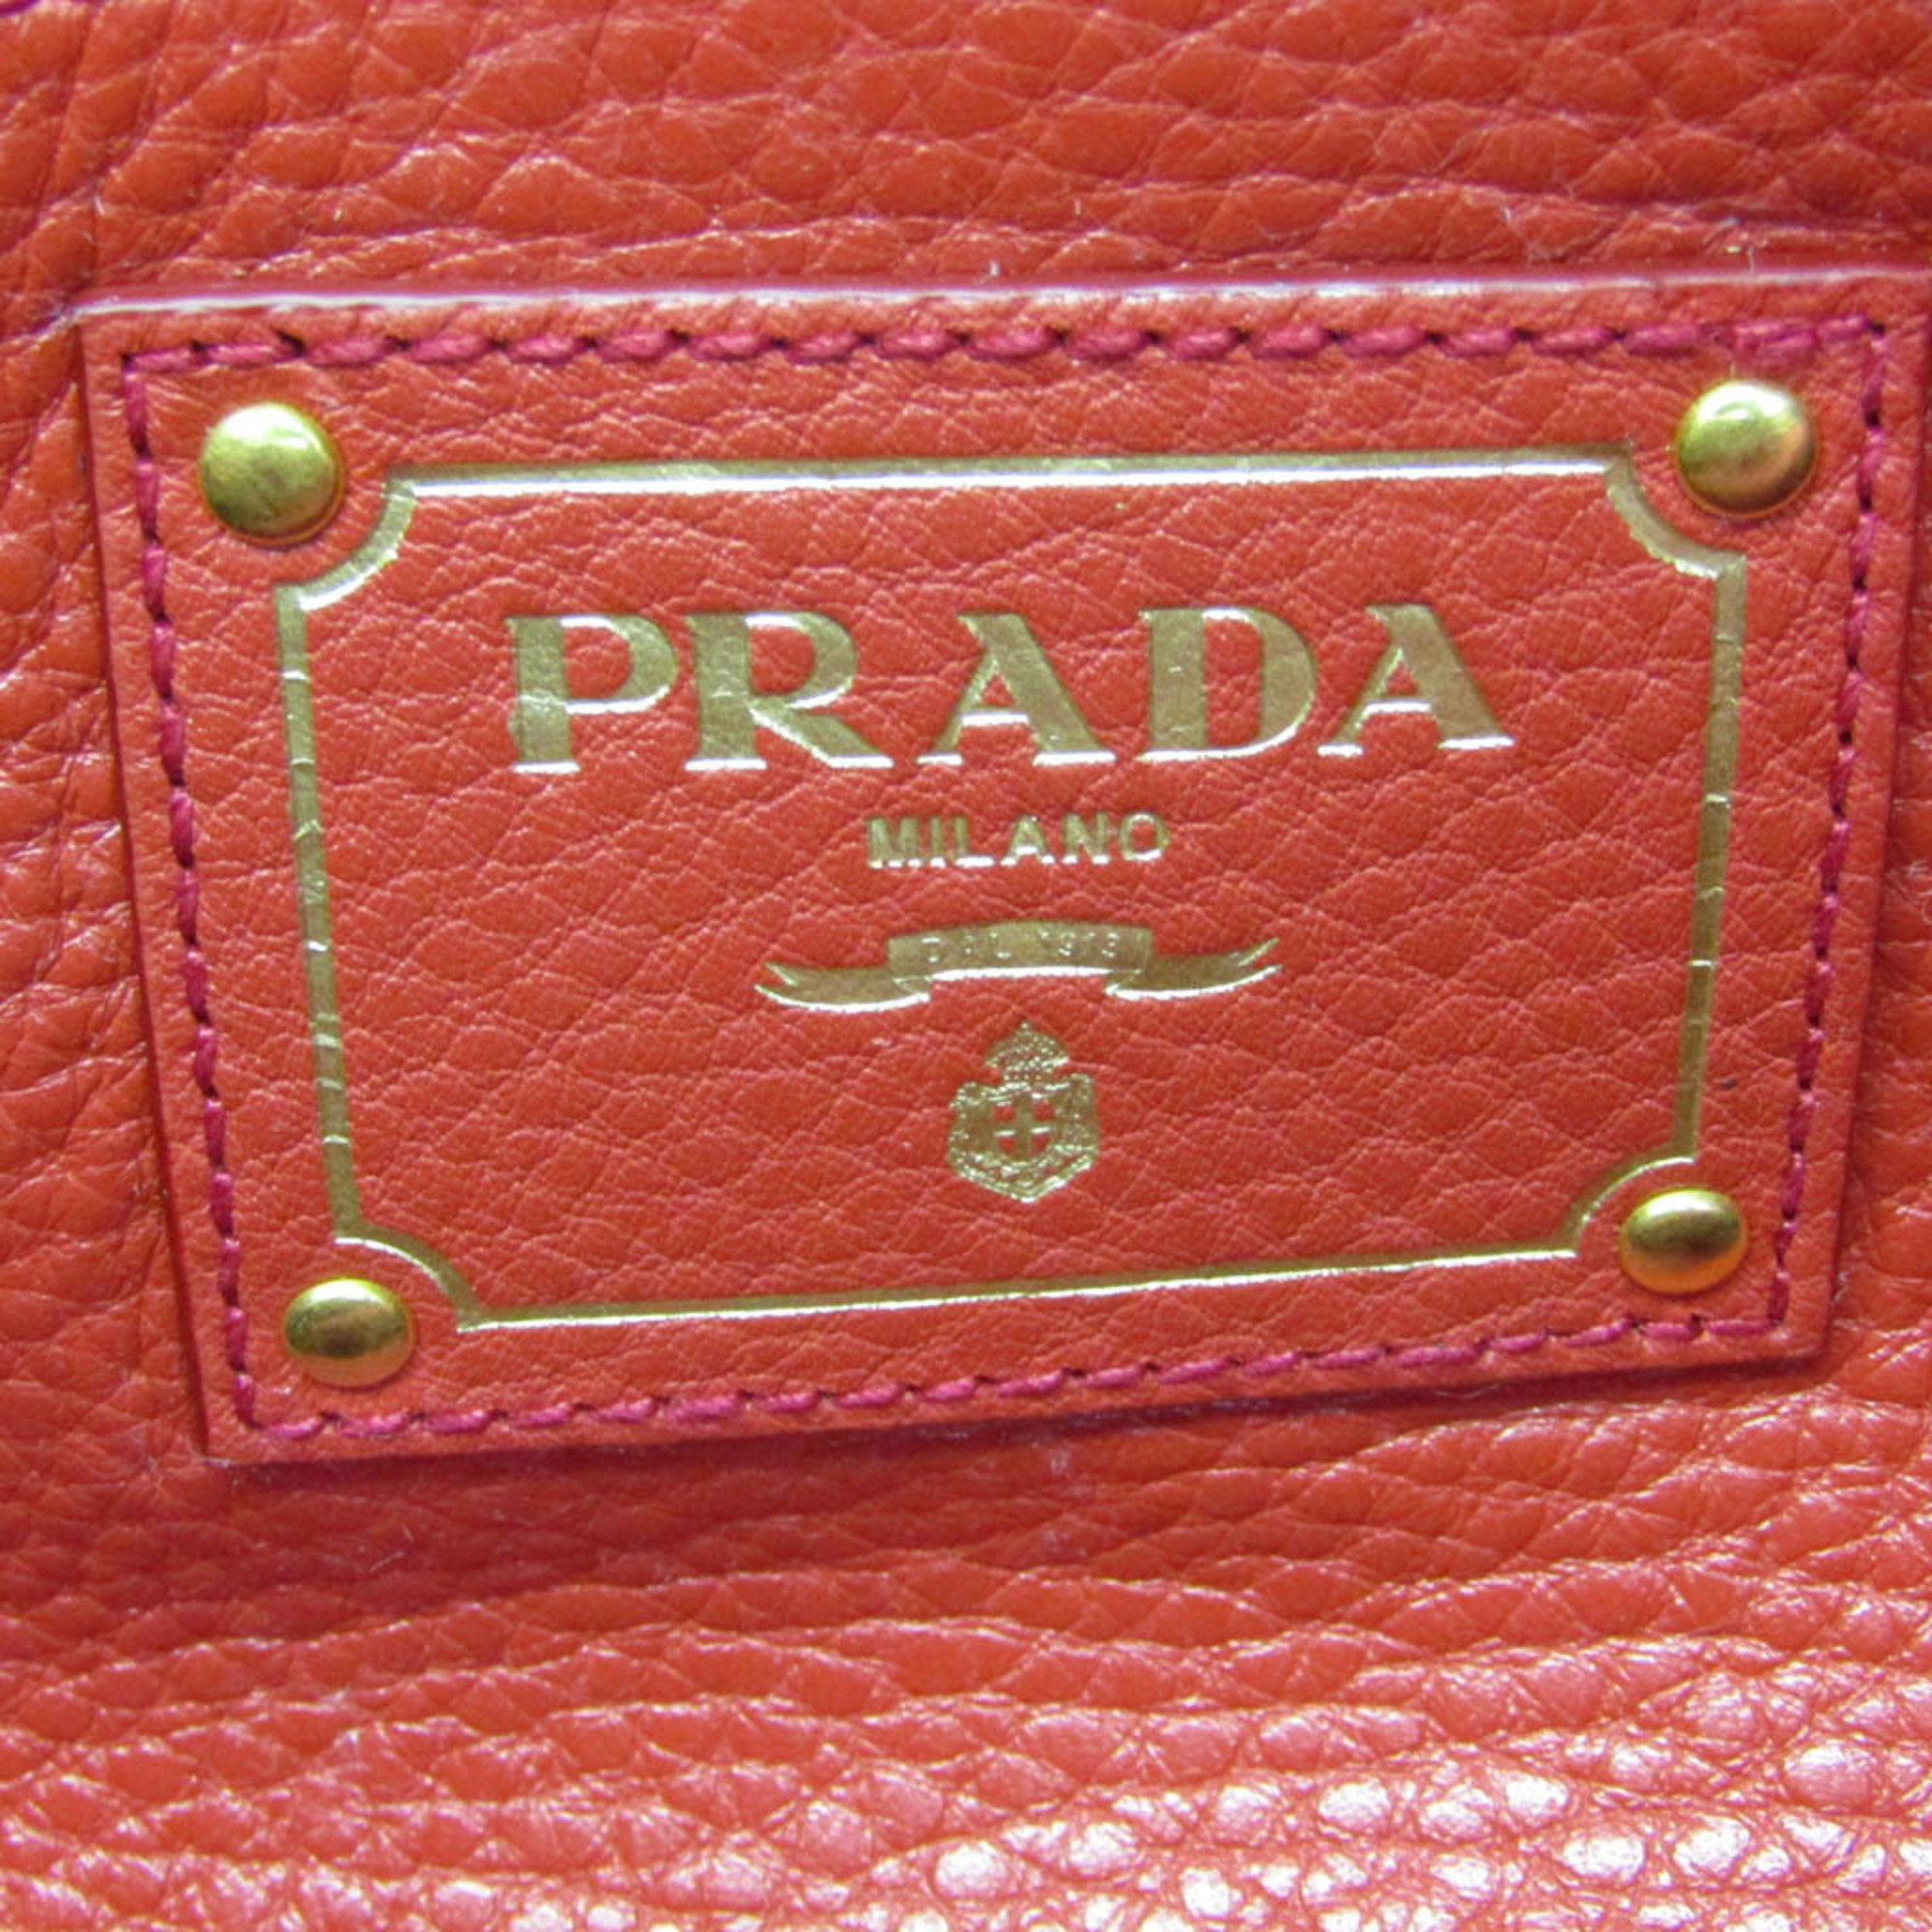 プラダ(Prada) レディース レザー ショルダーバッグ,トートバッグ レッド